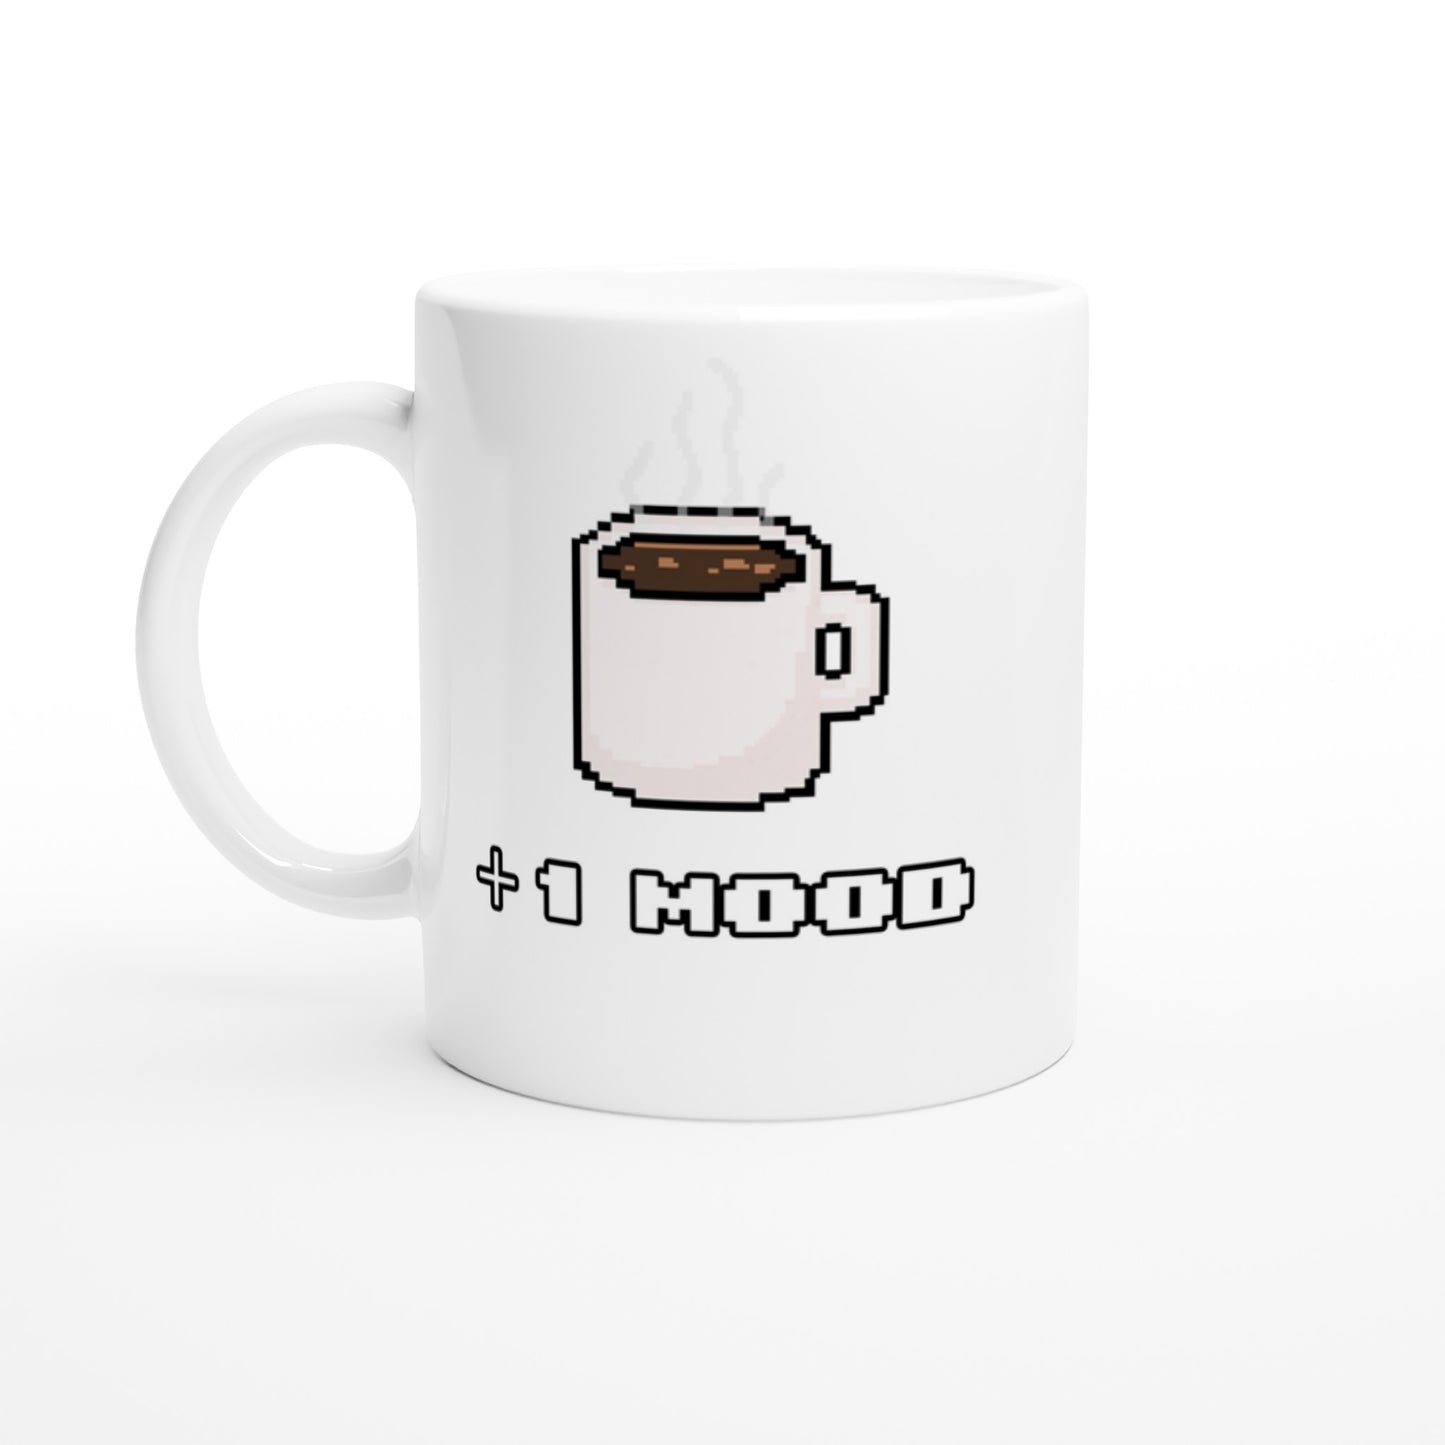 Kopje koffie - plus 1 mood - Mok